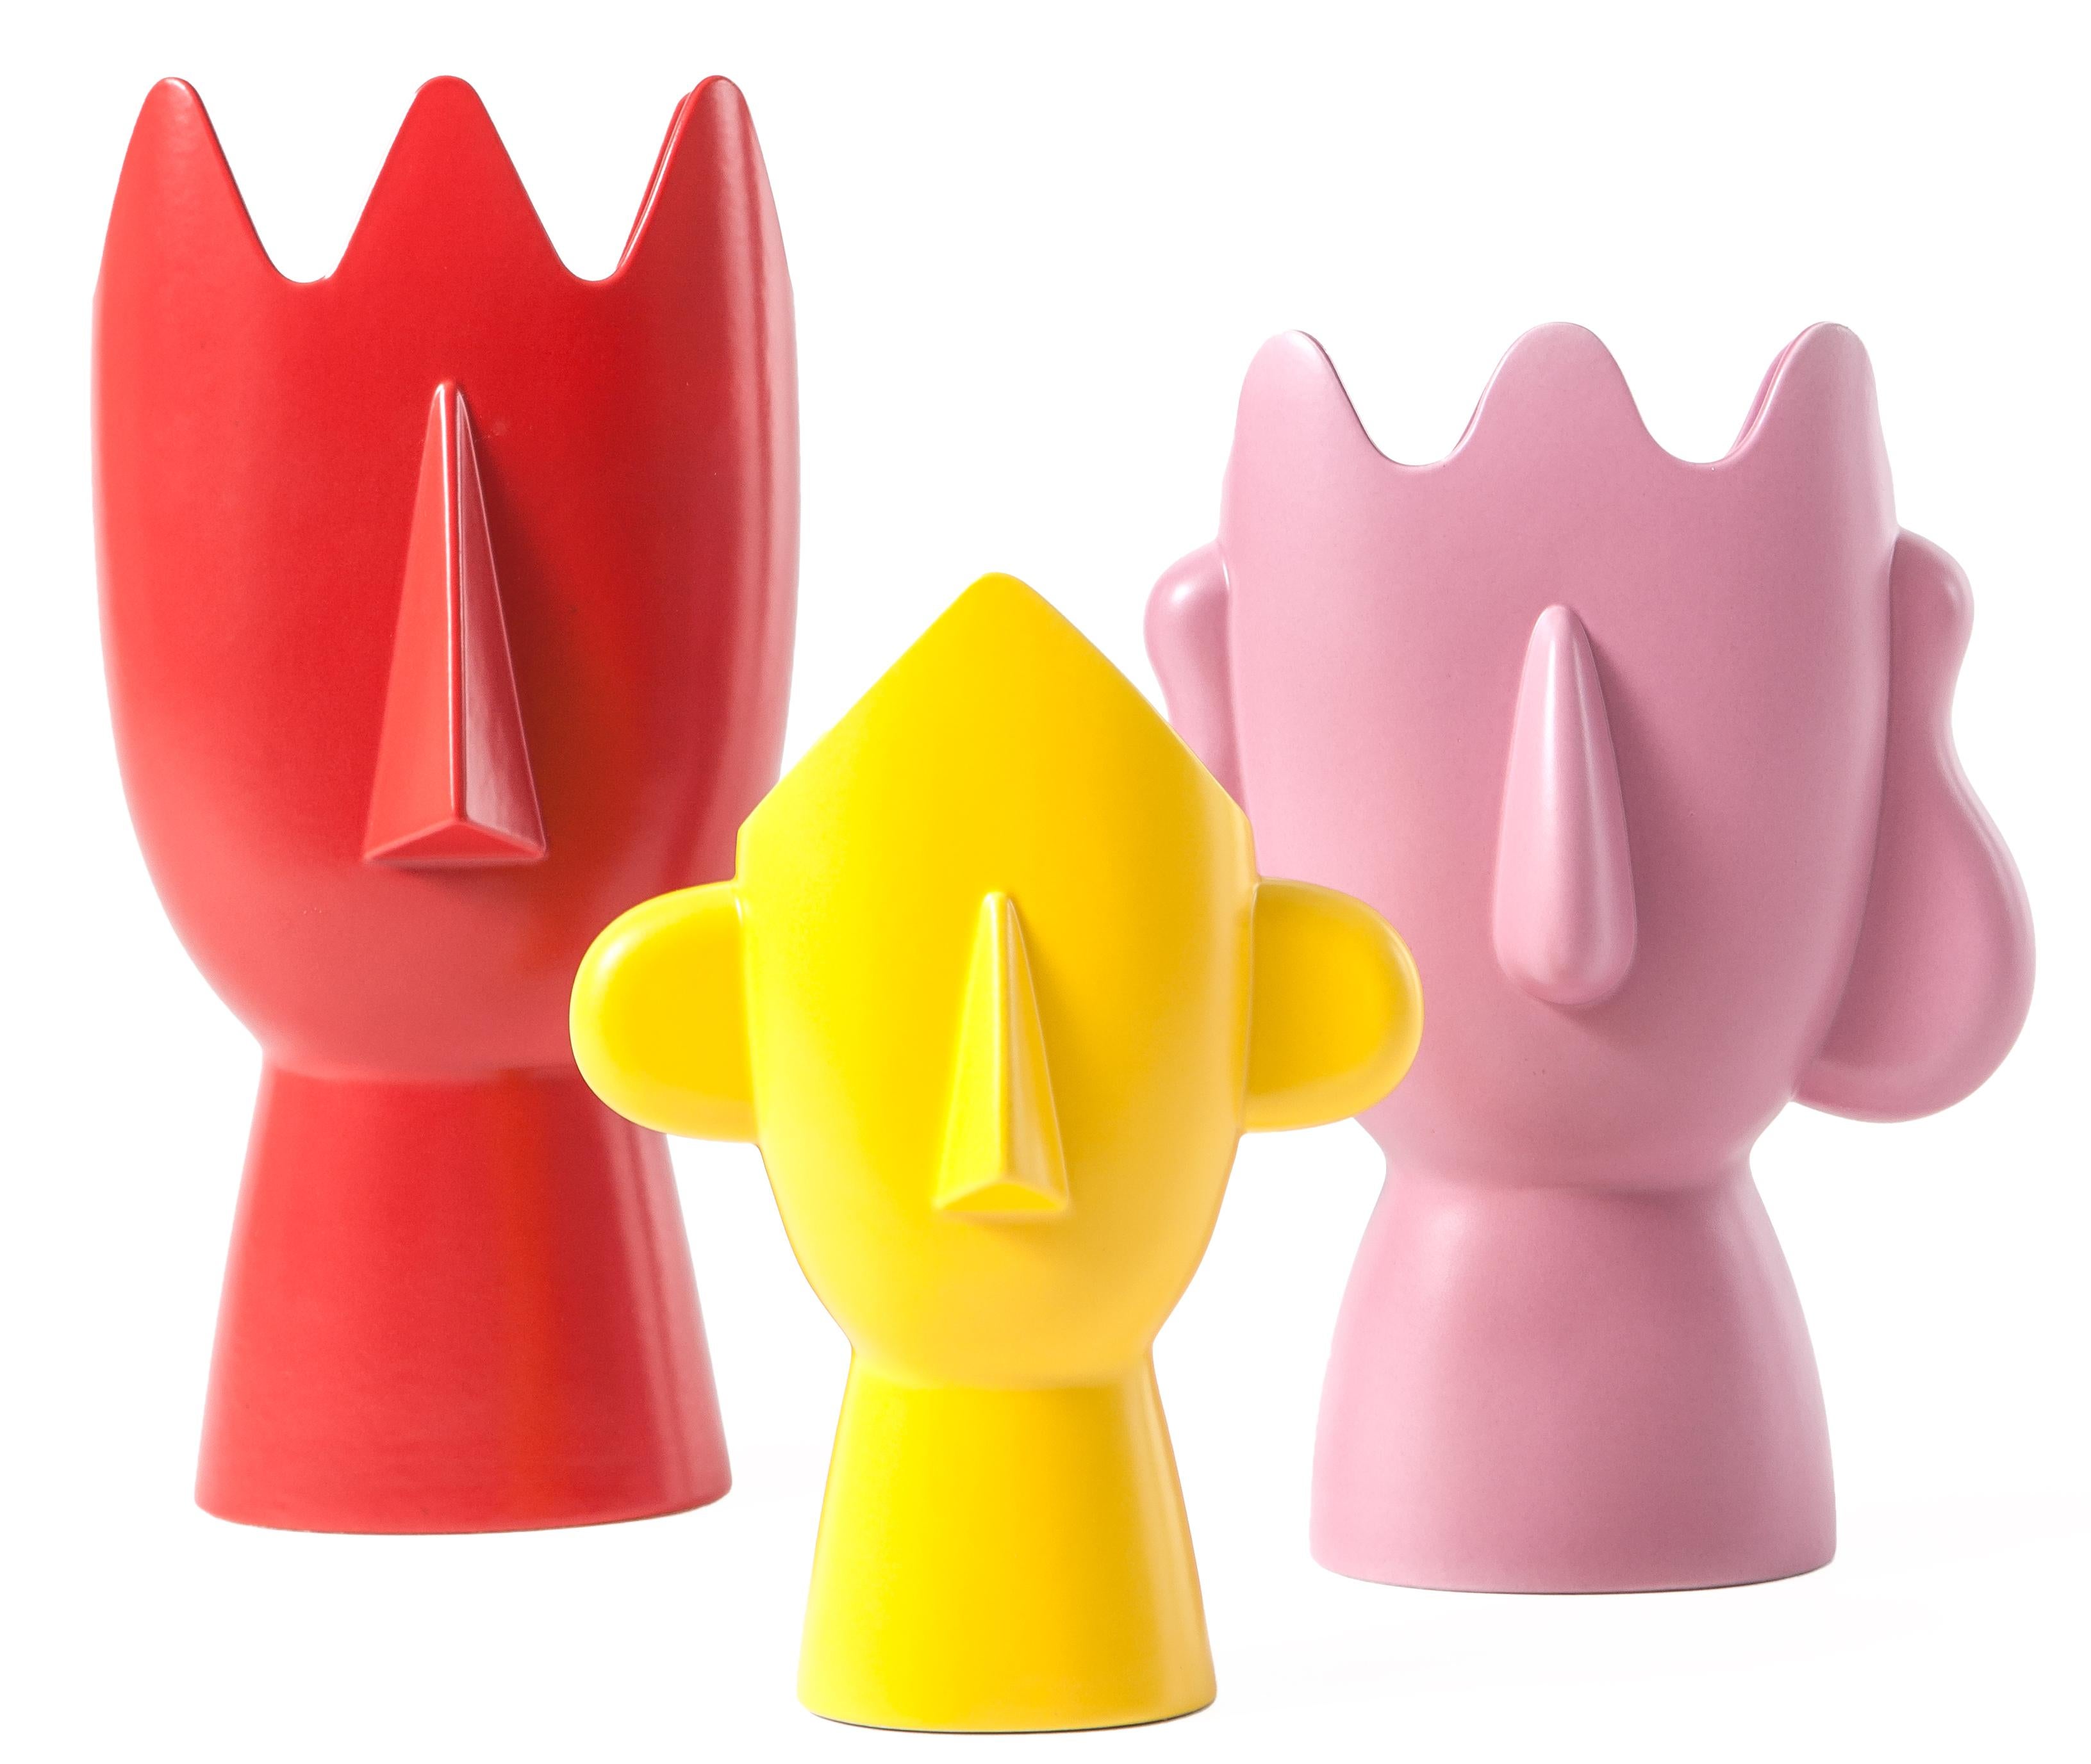 Die Diavoletti-Familie von Daniel Eltner ist eine Kollektion von drei verschiedenen Vasen, jede mit einer eigenen Farbe. Der rote Diavoletto, die rosafarbene Diavoletta und der gelbe Diavoletto bilden ein rätselhaftes, zeitgenössisches Triptychon,